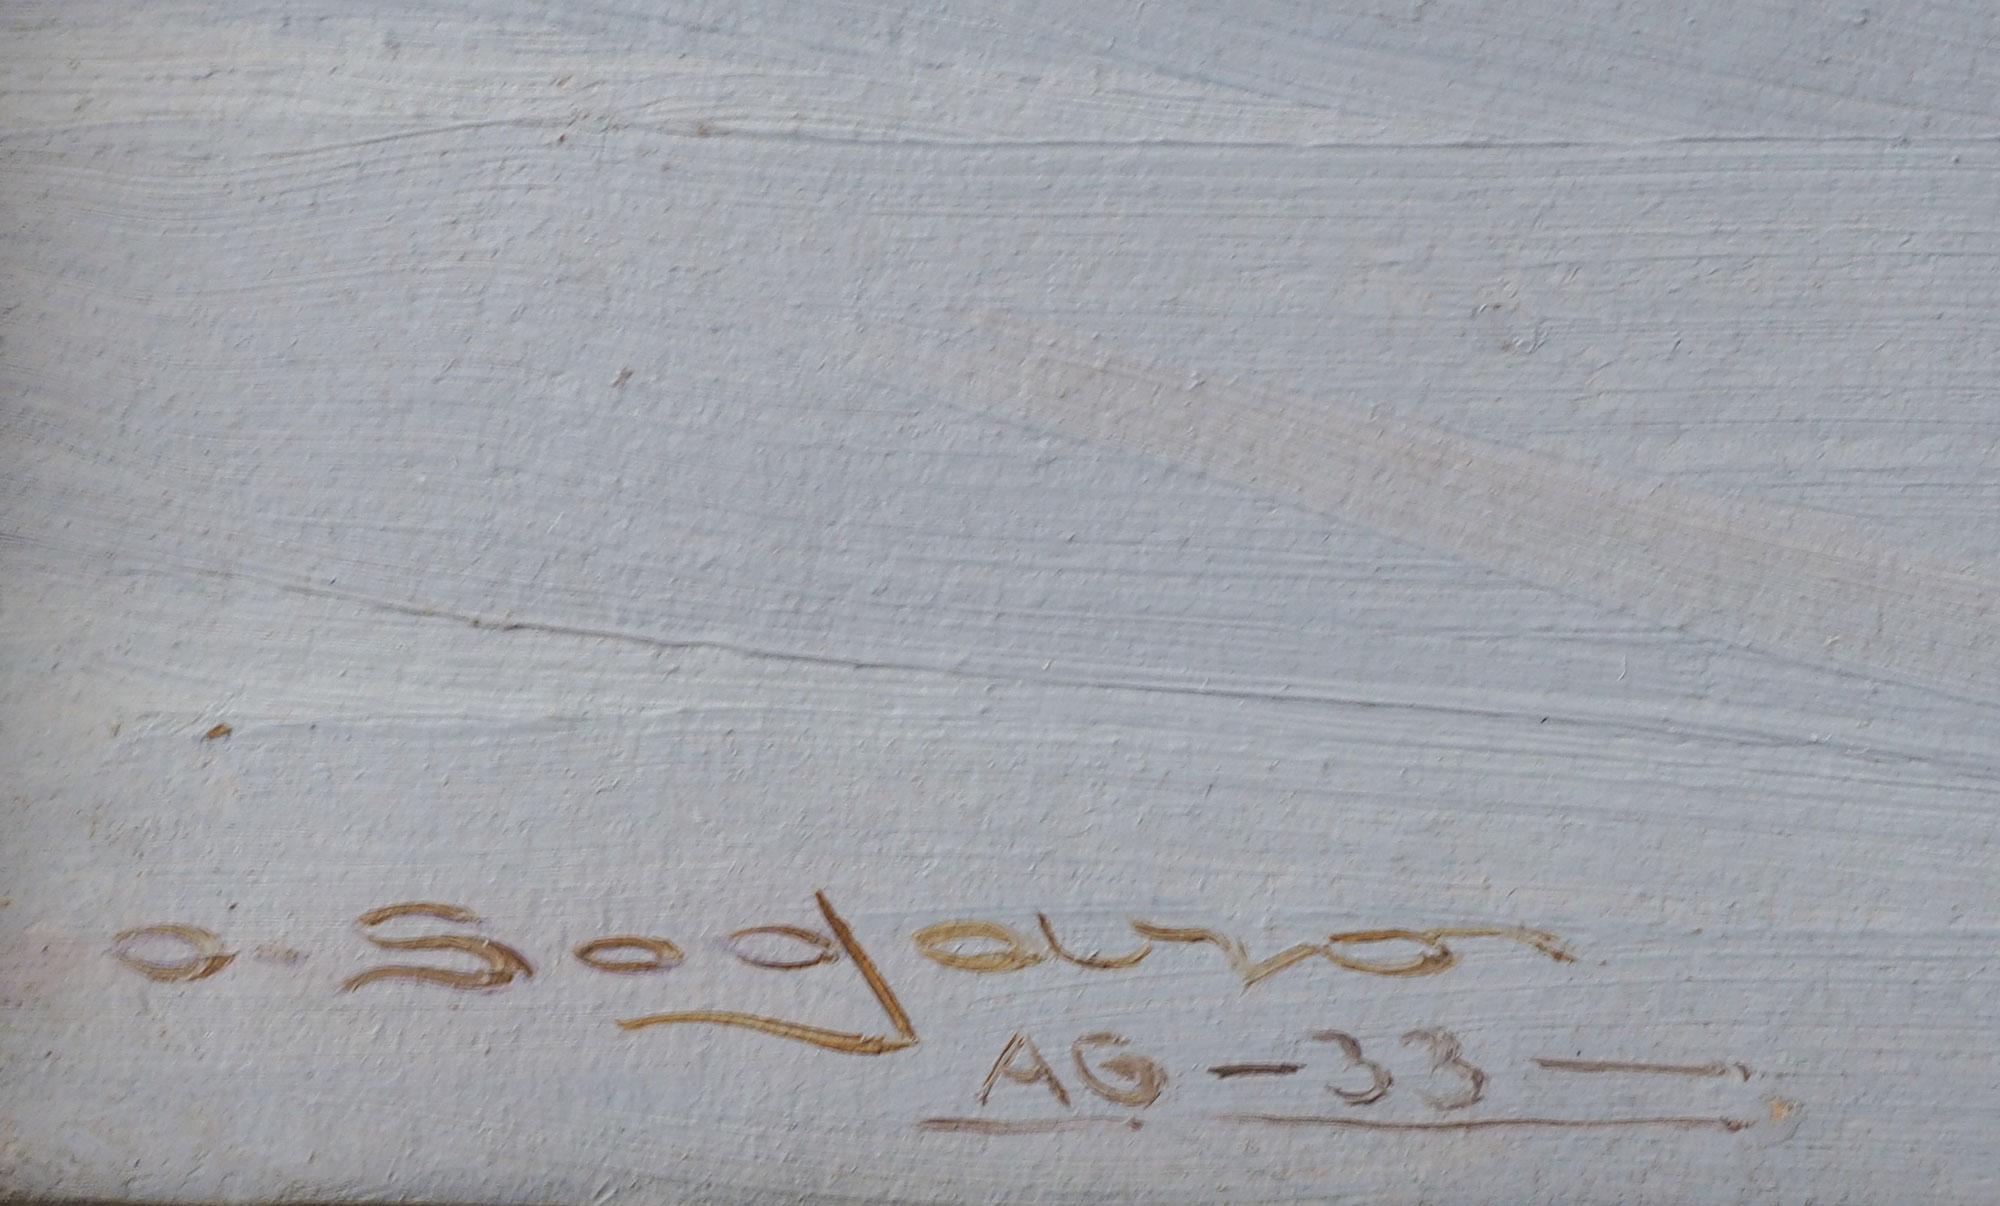 Couple de natures mortes d'Oscar Sogaro - XXe siècle
Couple de peintures à l'huile sur carton de l'artiste italien Oscar Sogaro (Dolo, 1888 - Venezia, 1967).
La nature morte au melon a été réalisée en 1932, tandis que celle à la pastèque a été